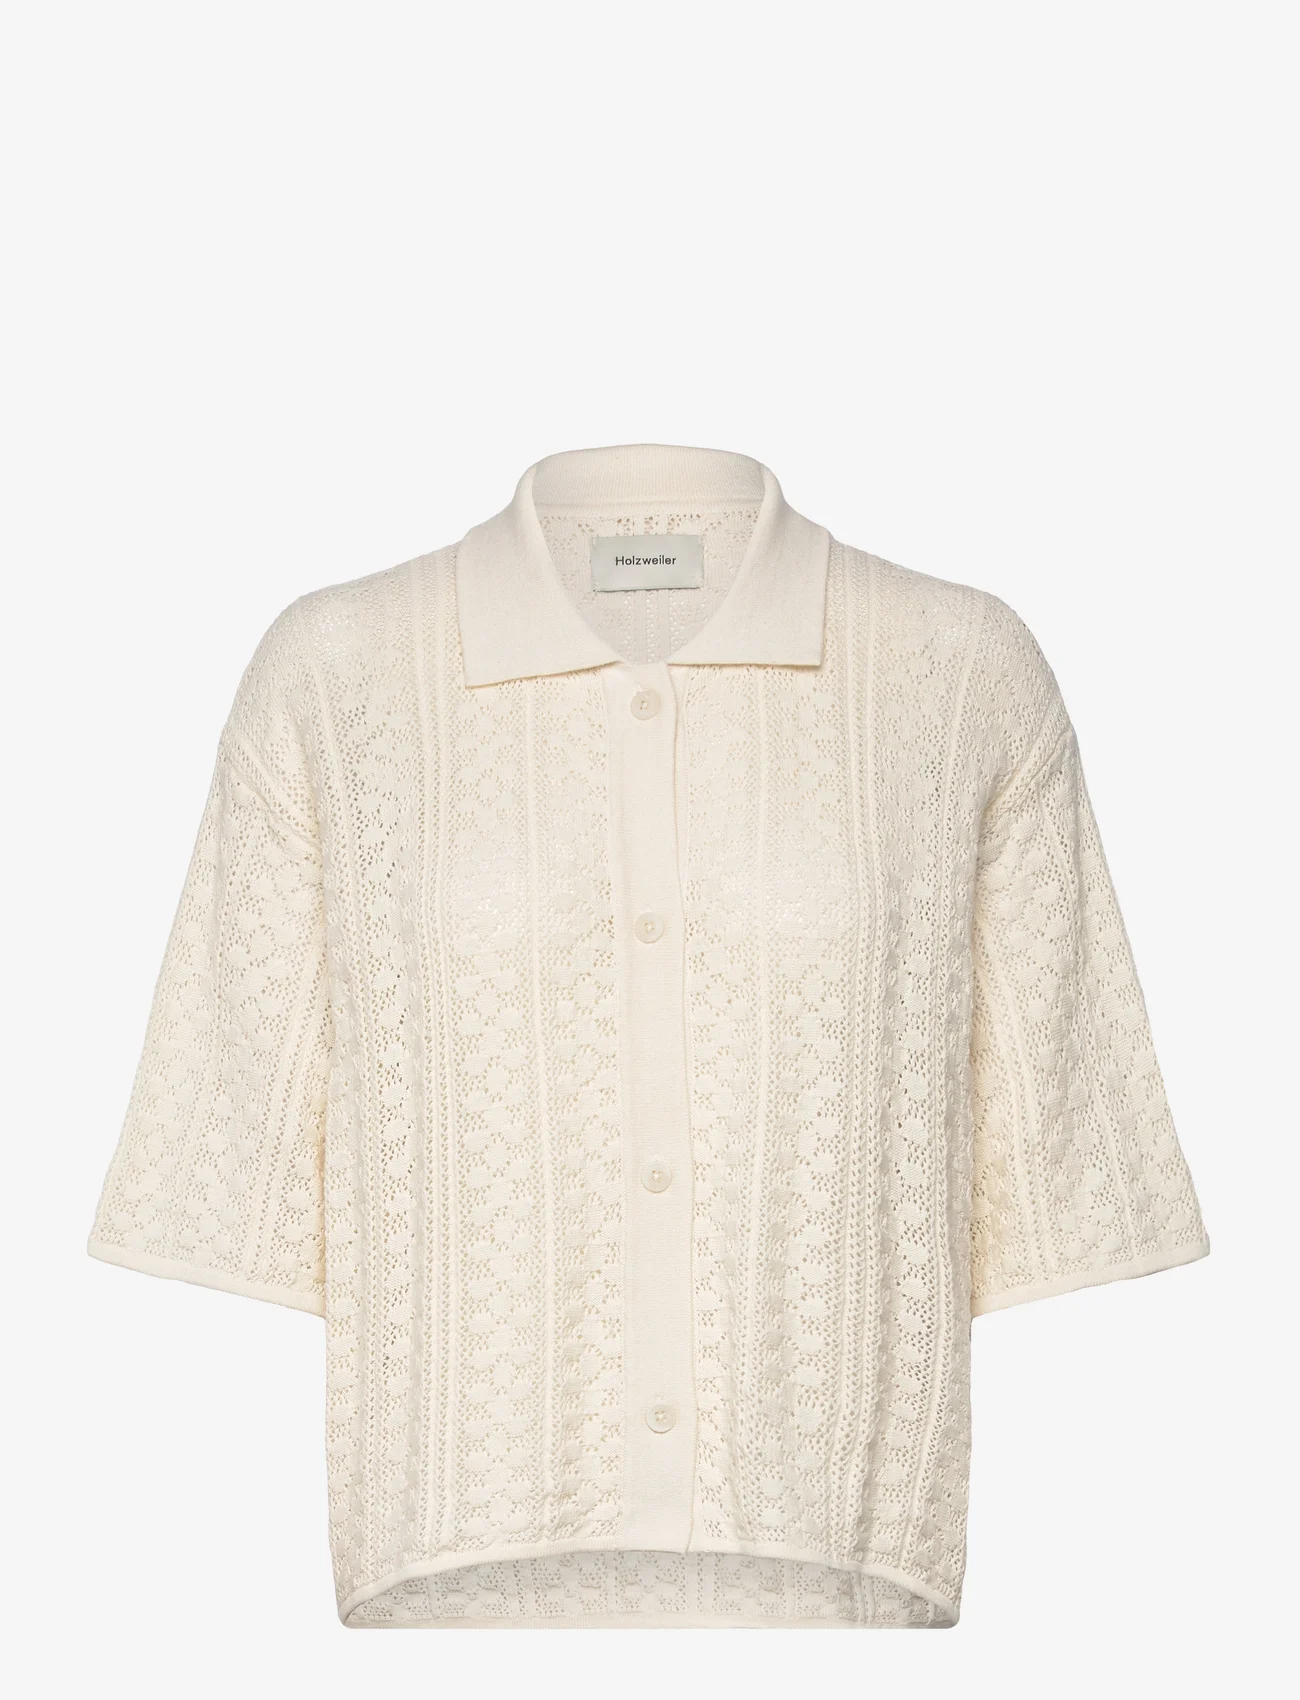 HOLZWEILER - Loch Crochet Knit Shirt - jeansowe koszule - white - 0